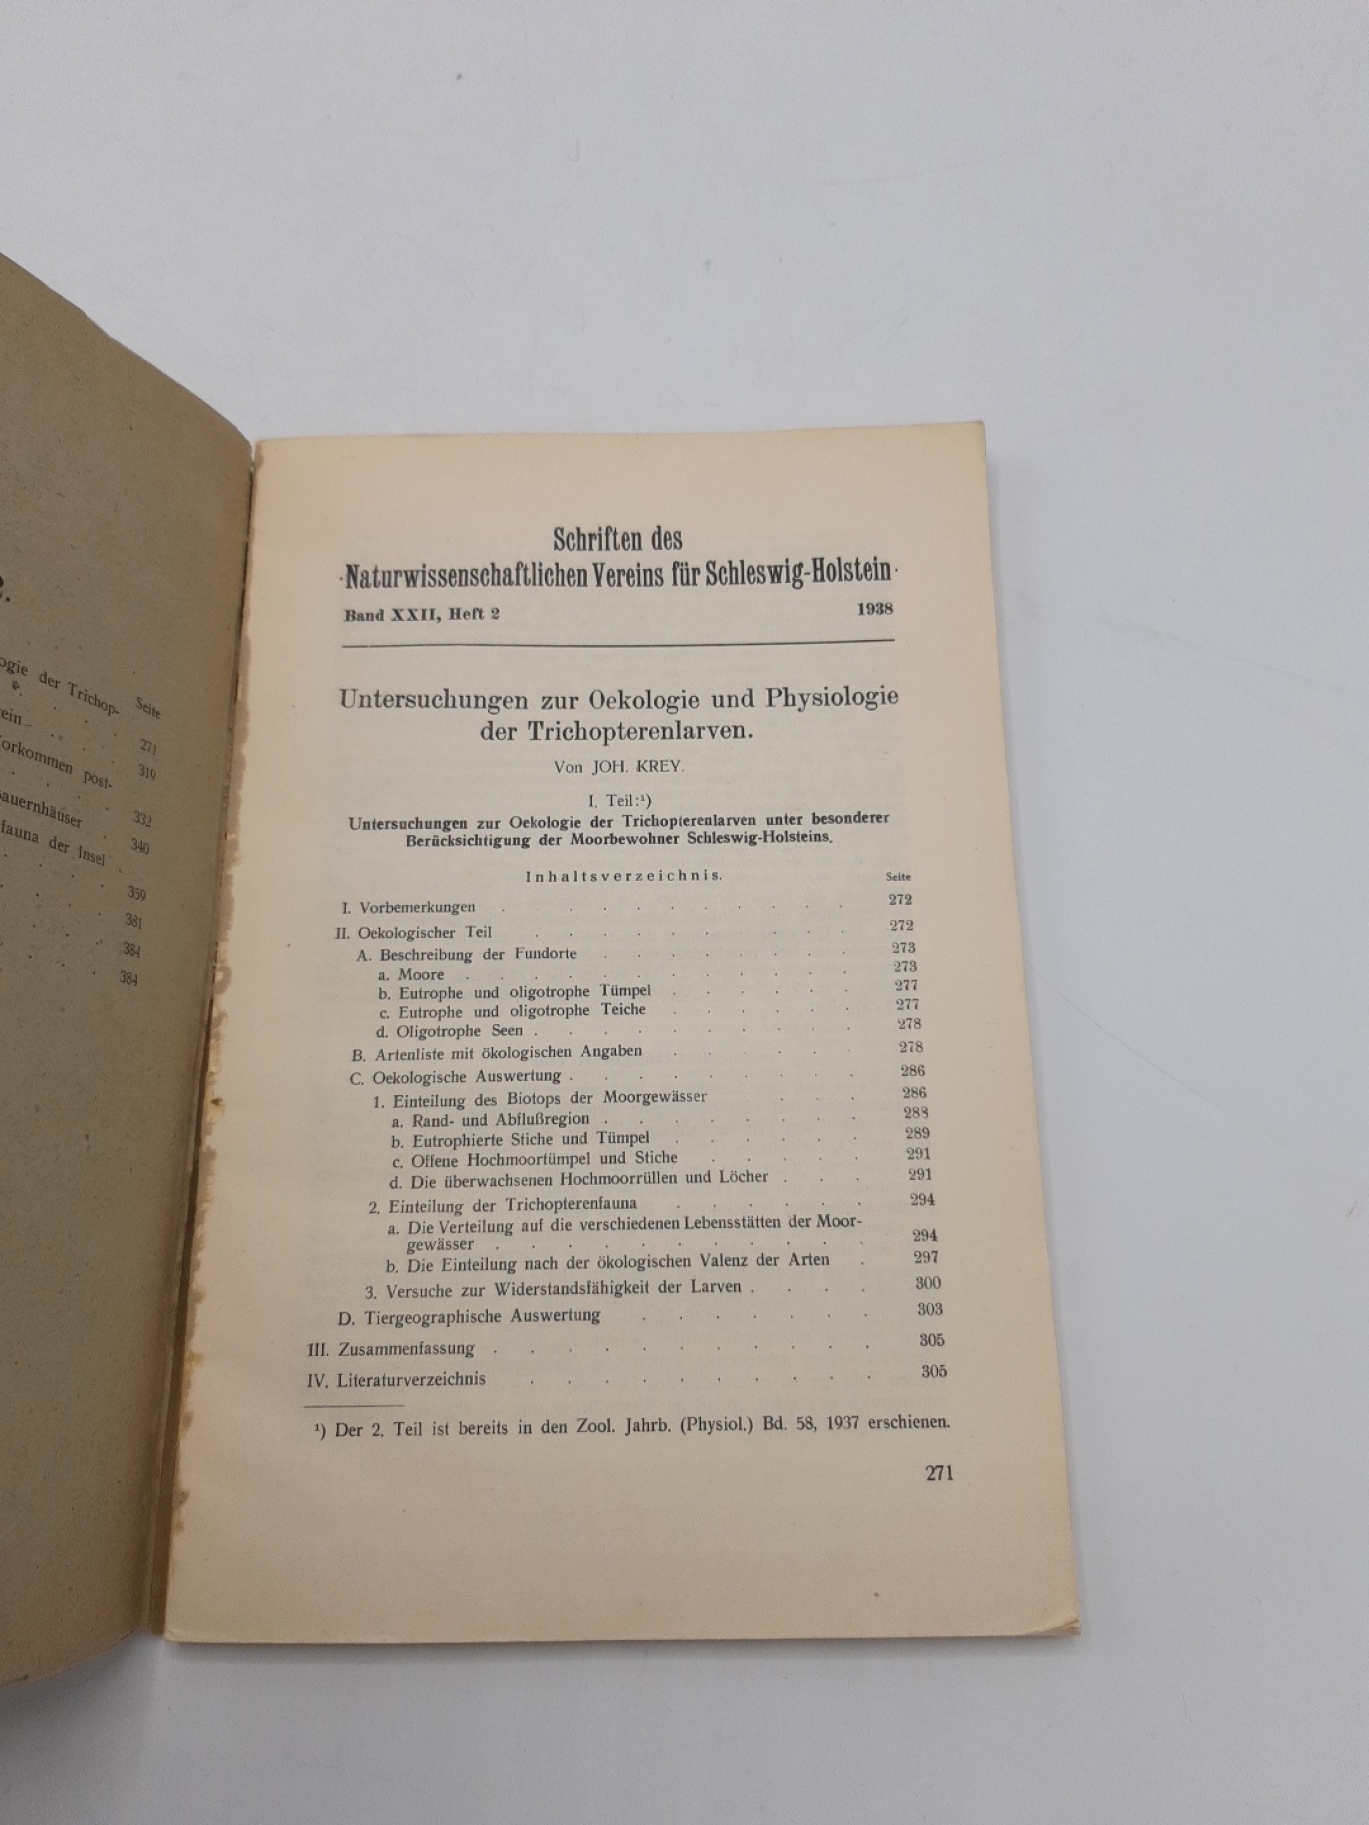 Krey, John.: Schriften des naturwissenschaftlichen Vereins für Schleswig Holstein Heft 2 1938